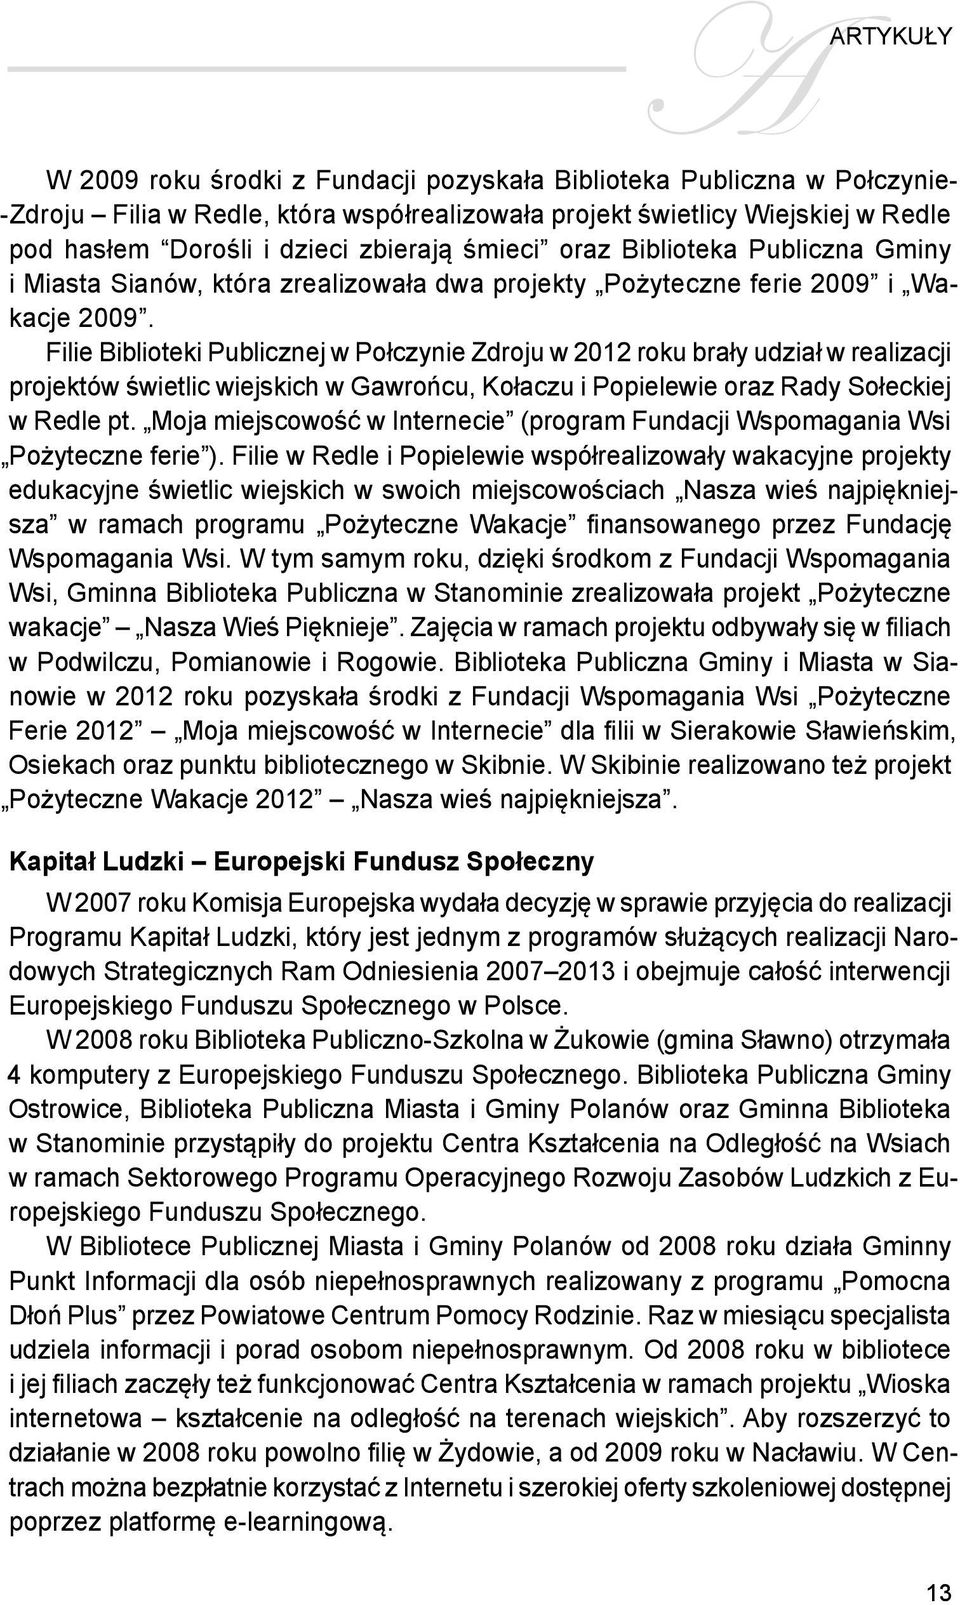 Filie Biblioteki Publicznej w Połczynie Zdroju w 2012 roku brały udział w realizacji projektów świetlic wiejskich w Gawrońcu, Kołaczu i Popielewie oraz Rady Sołeckiej w Redle pt.